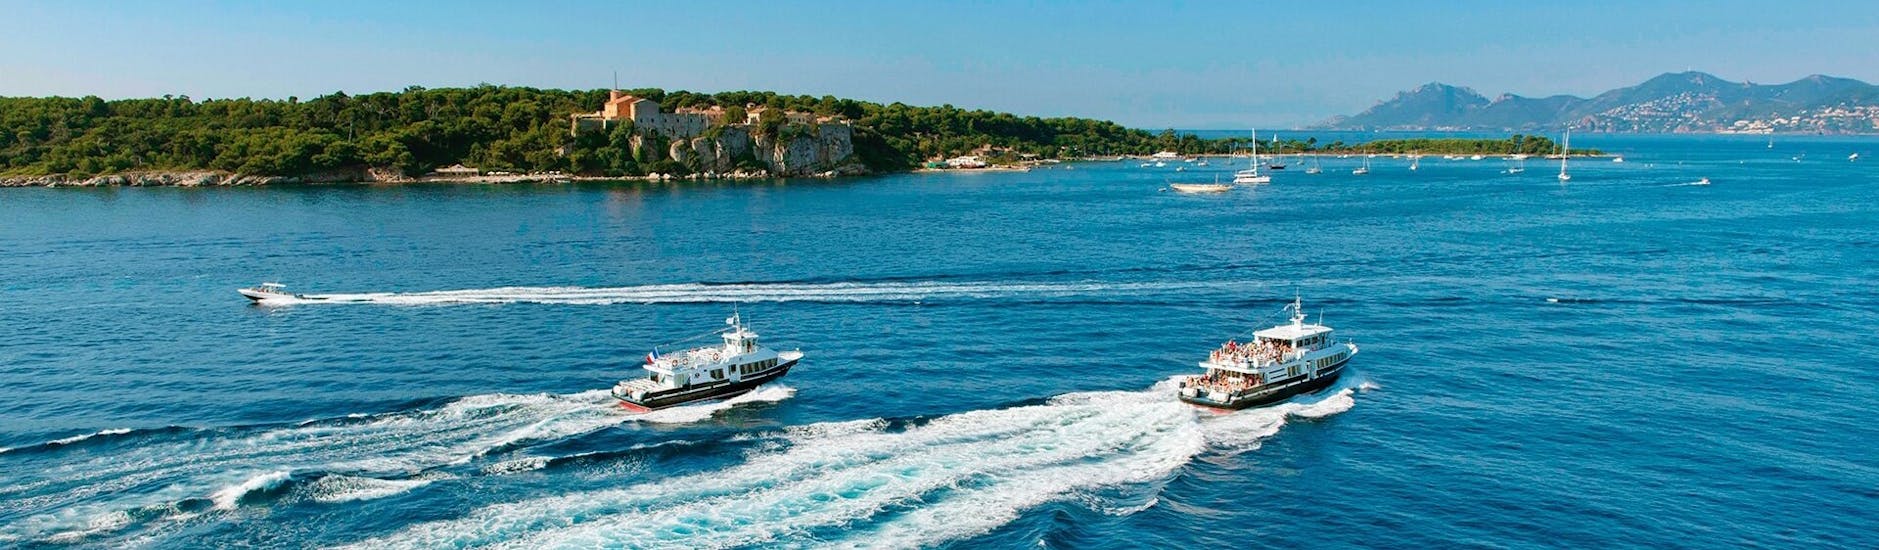 Uitzicht op de boten tijdens de boottransfer van Cannes naar het eiland Sainte-Marguerite met Trans Côte d'Azur.